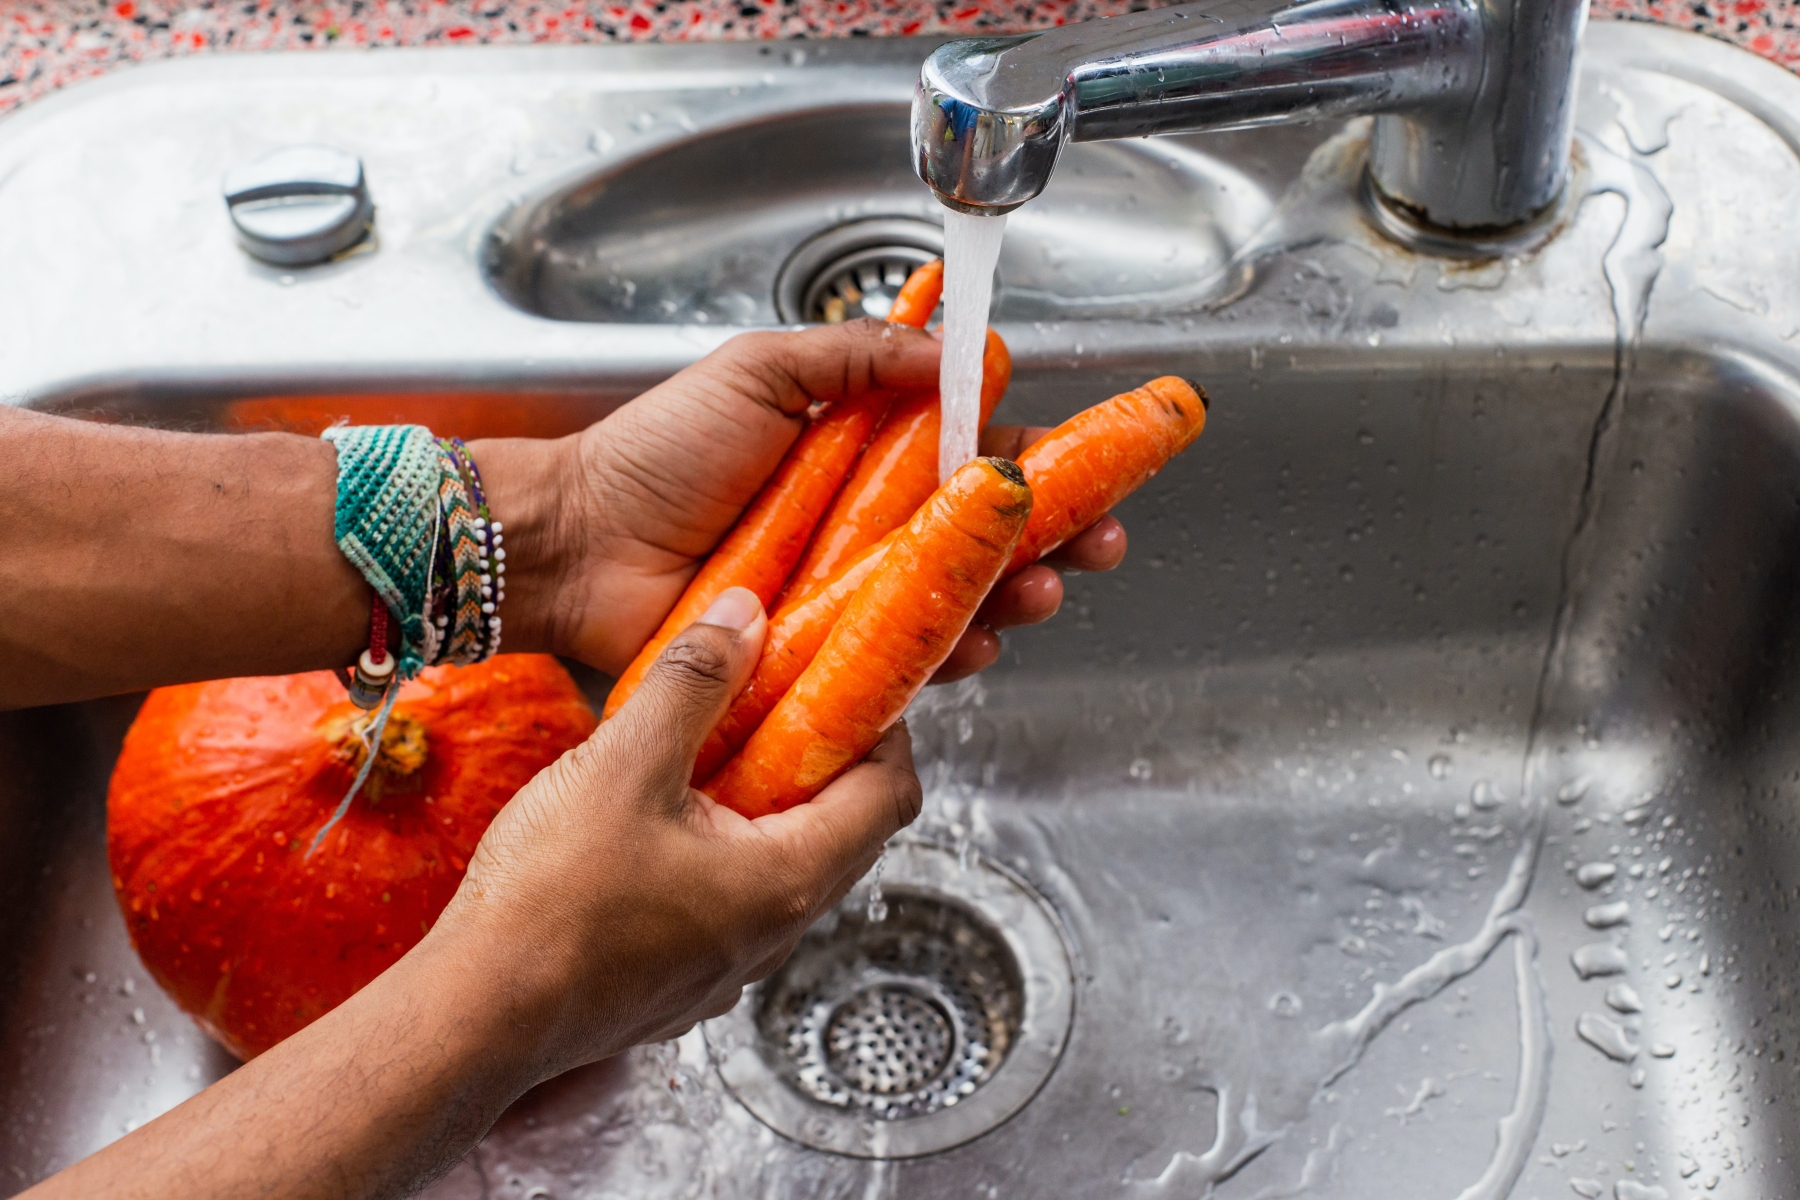 Διατροφή: 6 τροφές που πρέπει να πλένετε πριν τις καταναλώσετε